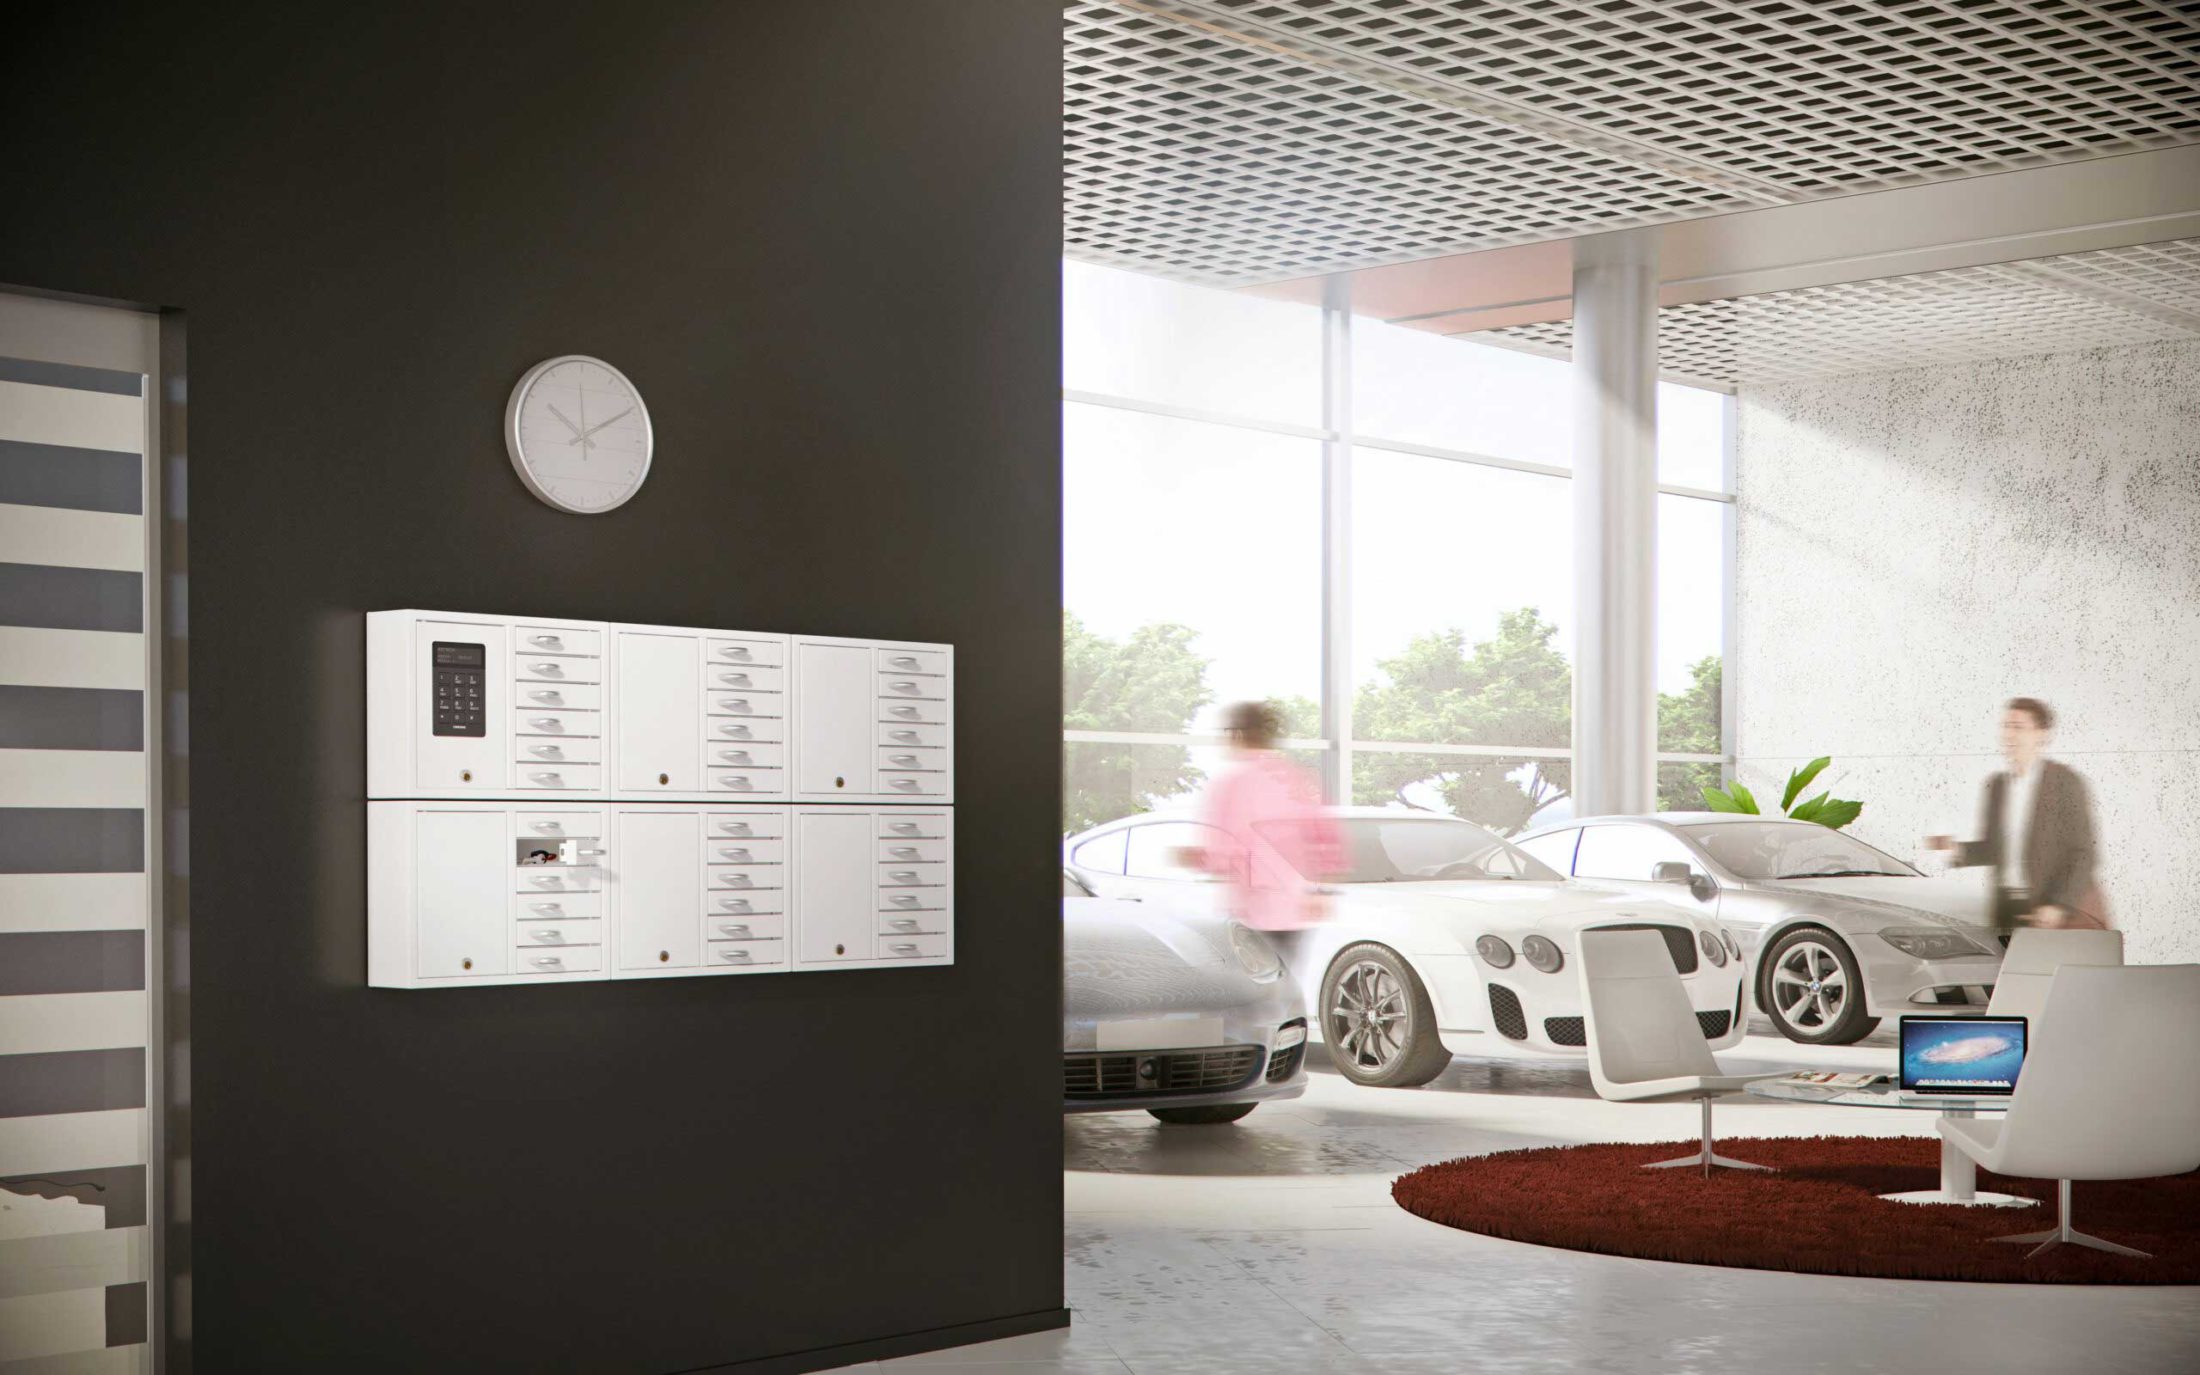 El gabinete de llaves 9006 S de la serie System más cinco del 9006 E de la serie Expansion manejan la gestión de llaves de la empresa automovilística. Montado en la pared con compartimentos abiertos que contienen llaves de coches.